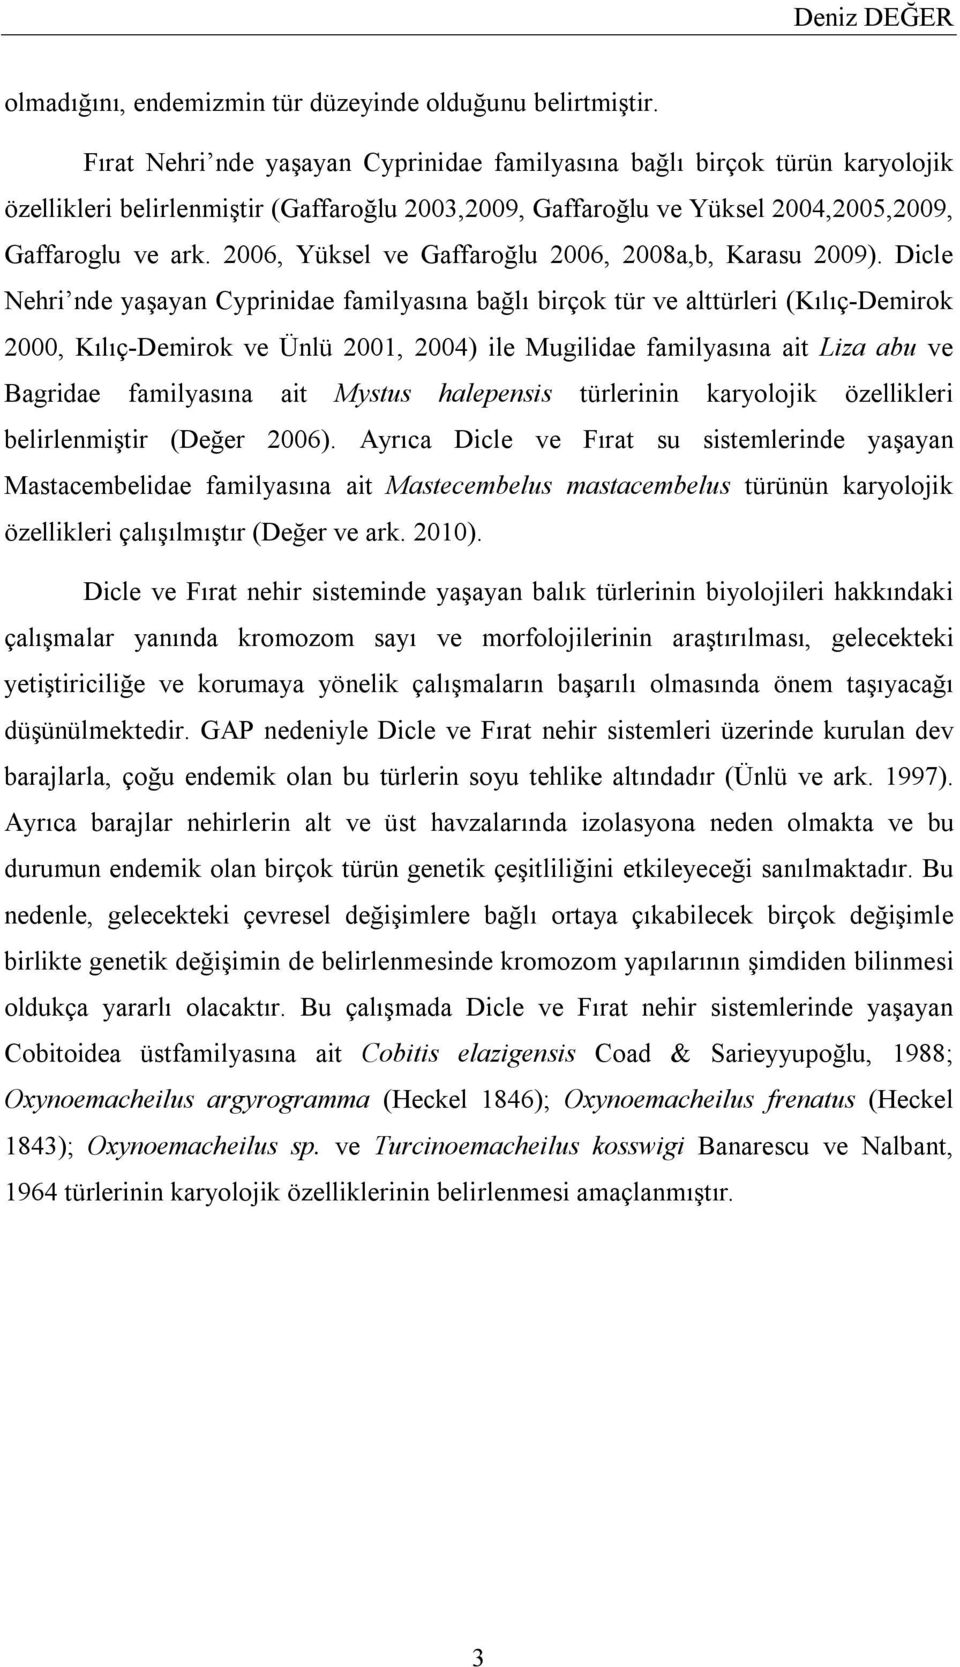 2006, Yüksel ve Gaffaroğlu 2006, 2008a,b, Karasu 2009).